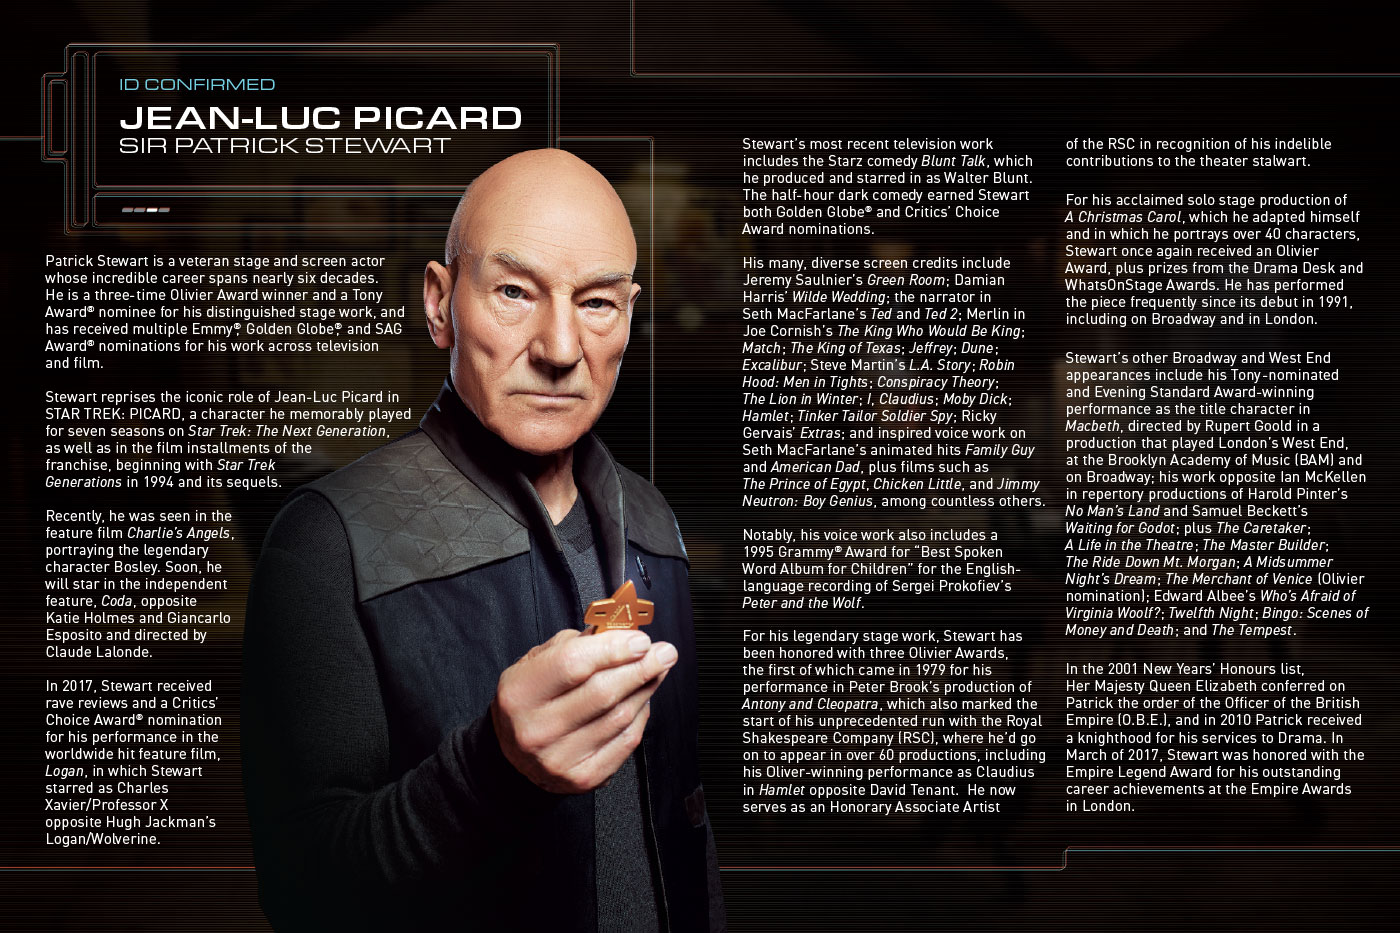 Star Trek: Picard: The Last Best Hope (1)